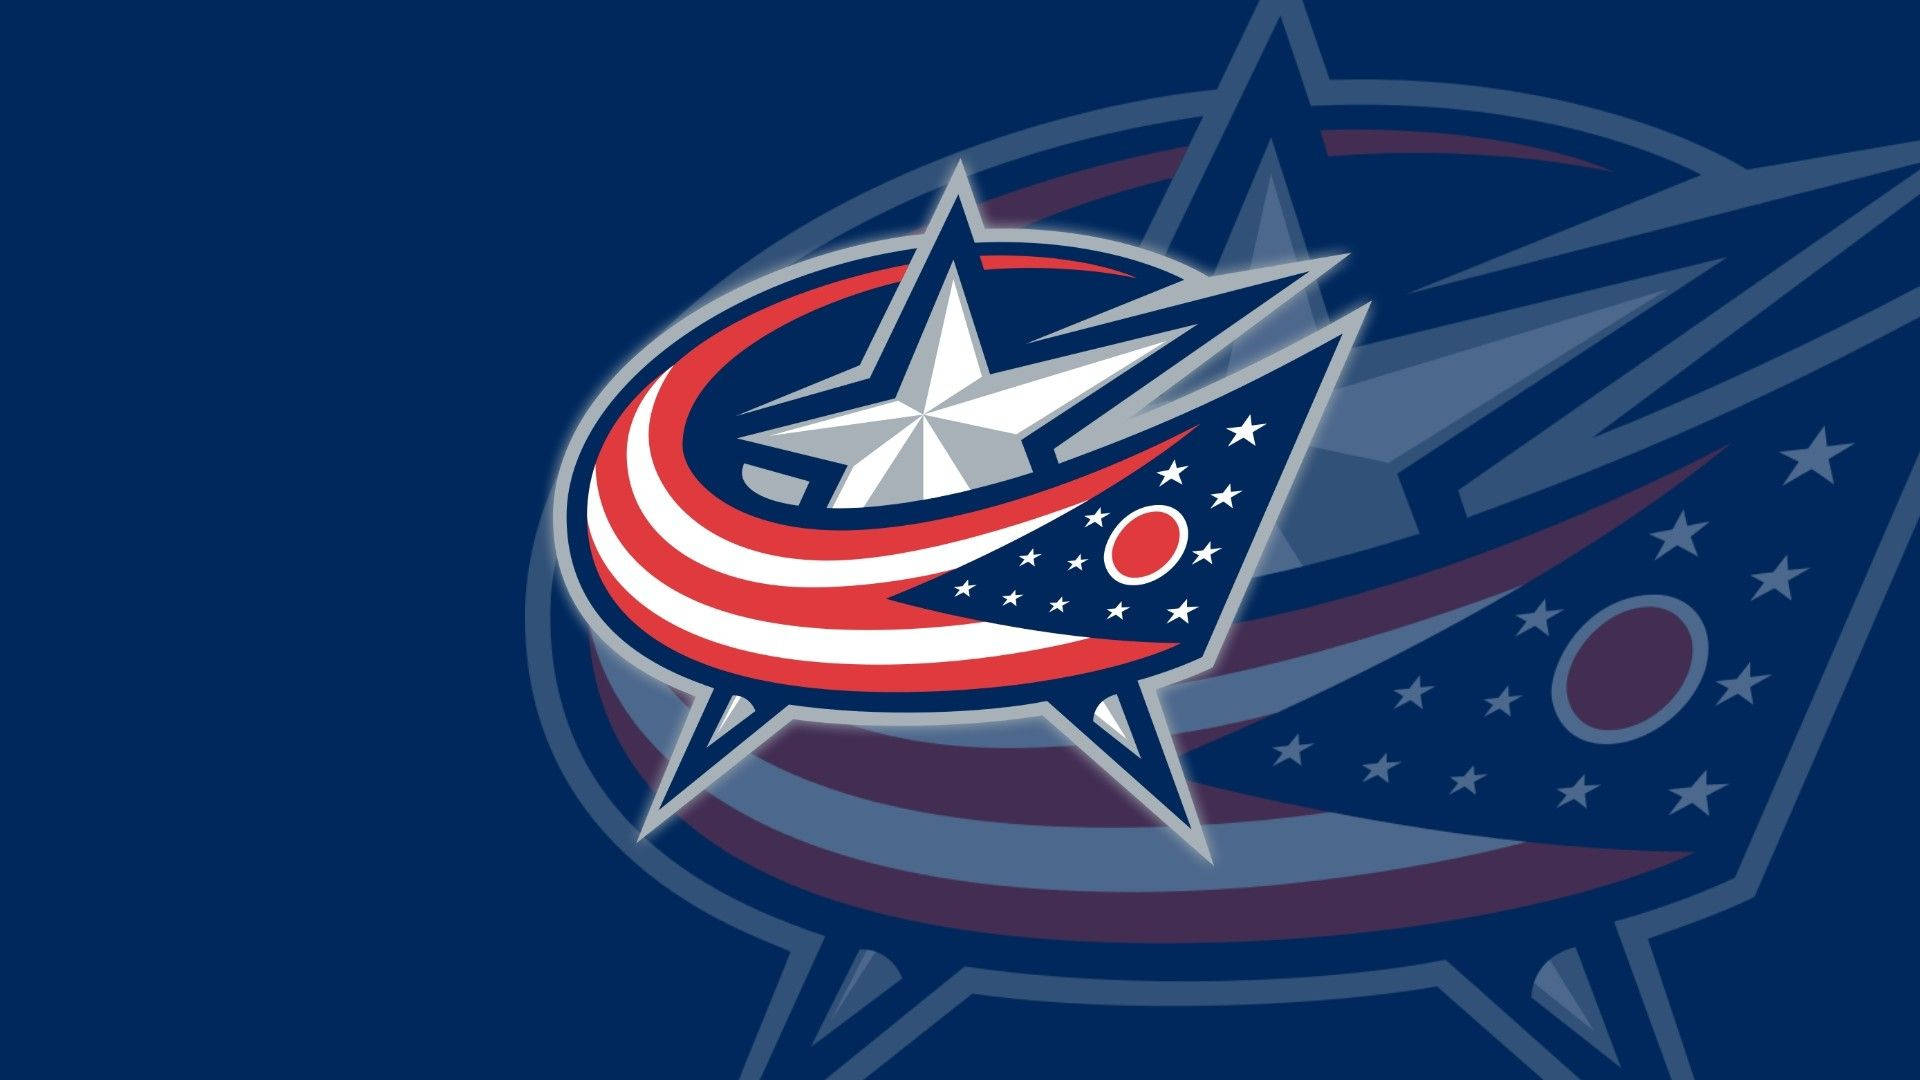 Columbus Blue Jackets Hockey Team Logo Wallpaper